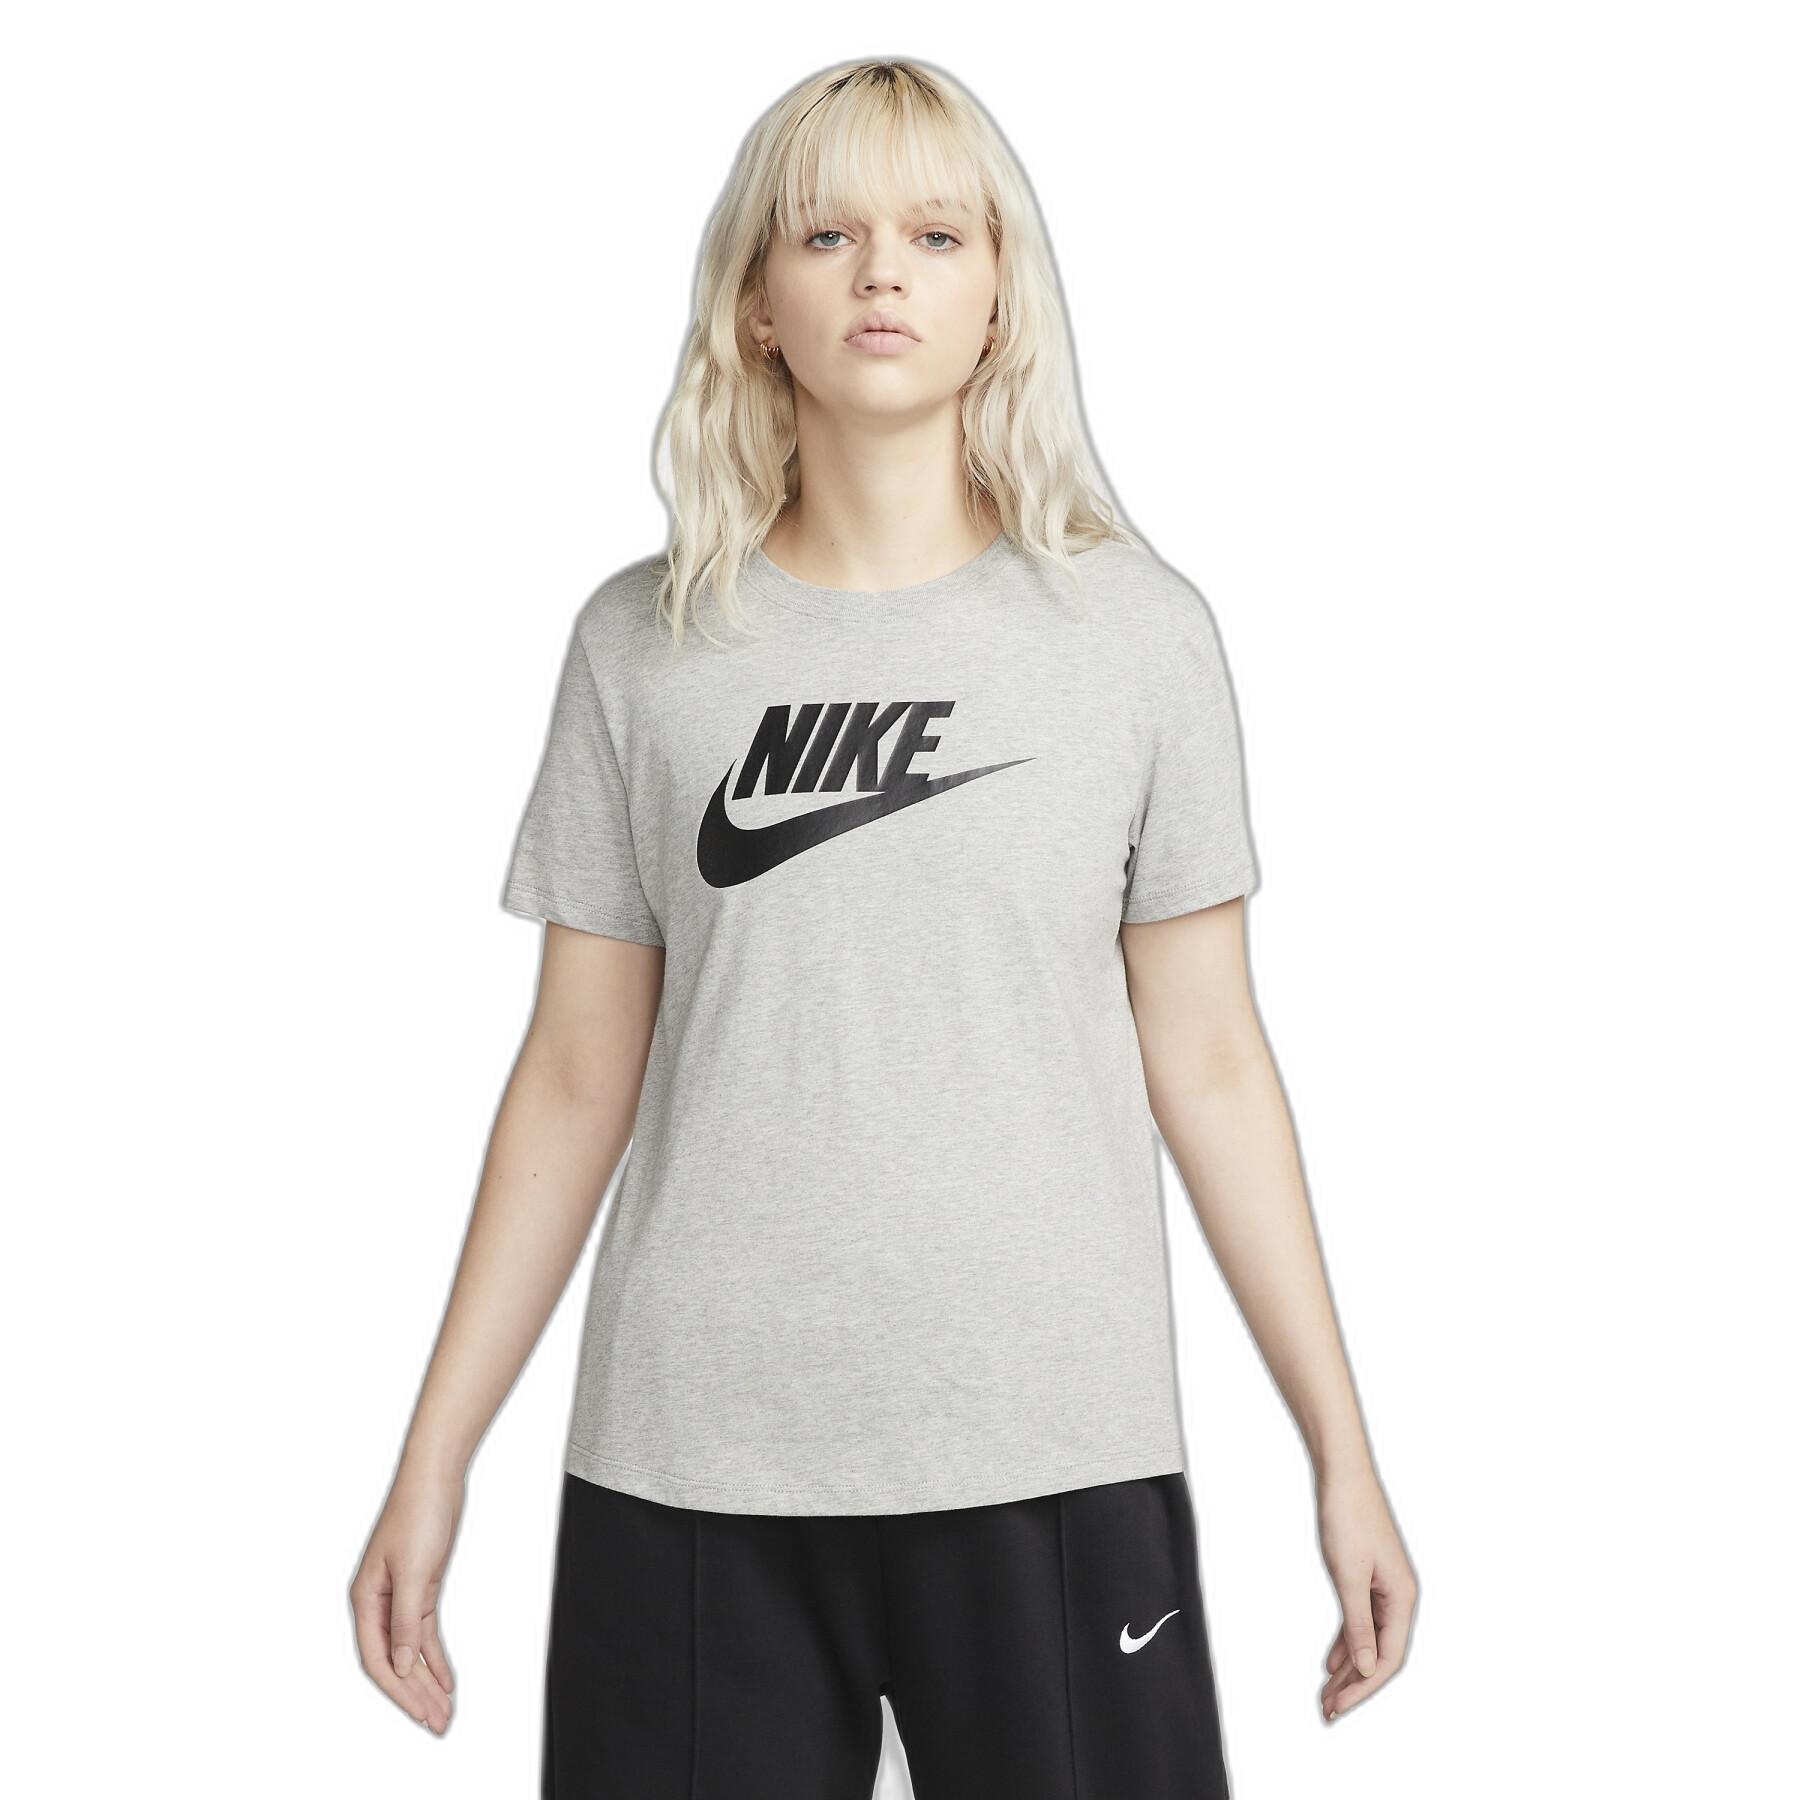 Dames-T-shirt Nike Club